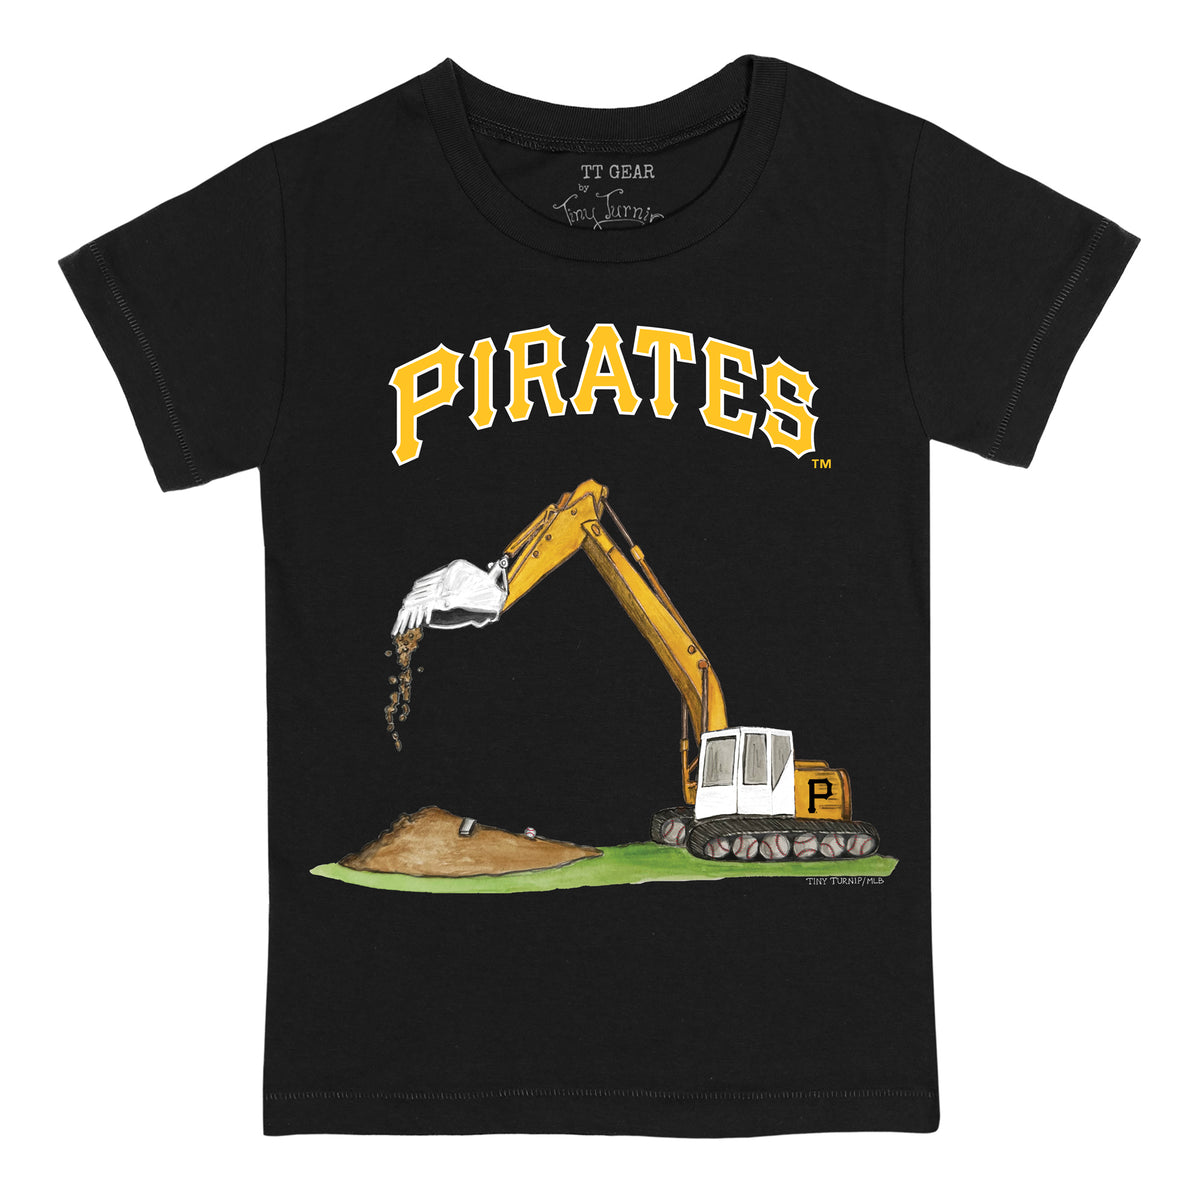 Pittsburgh Pirates Excavator Tee Shirt